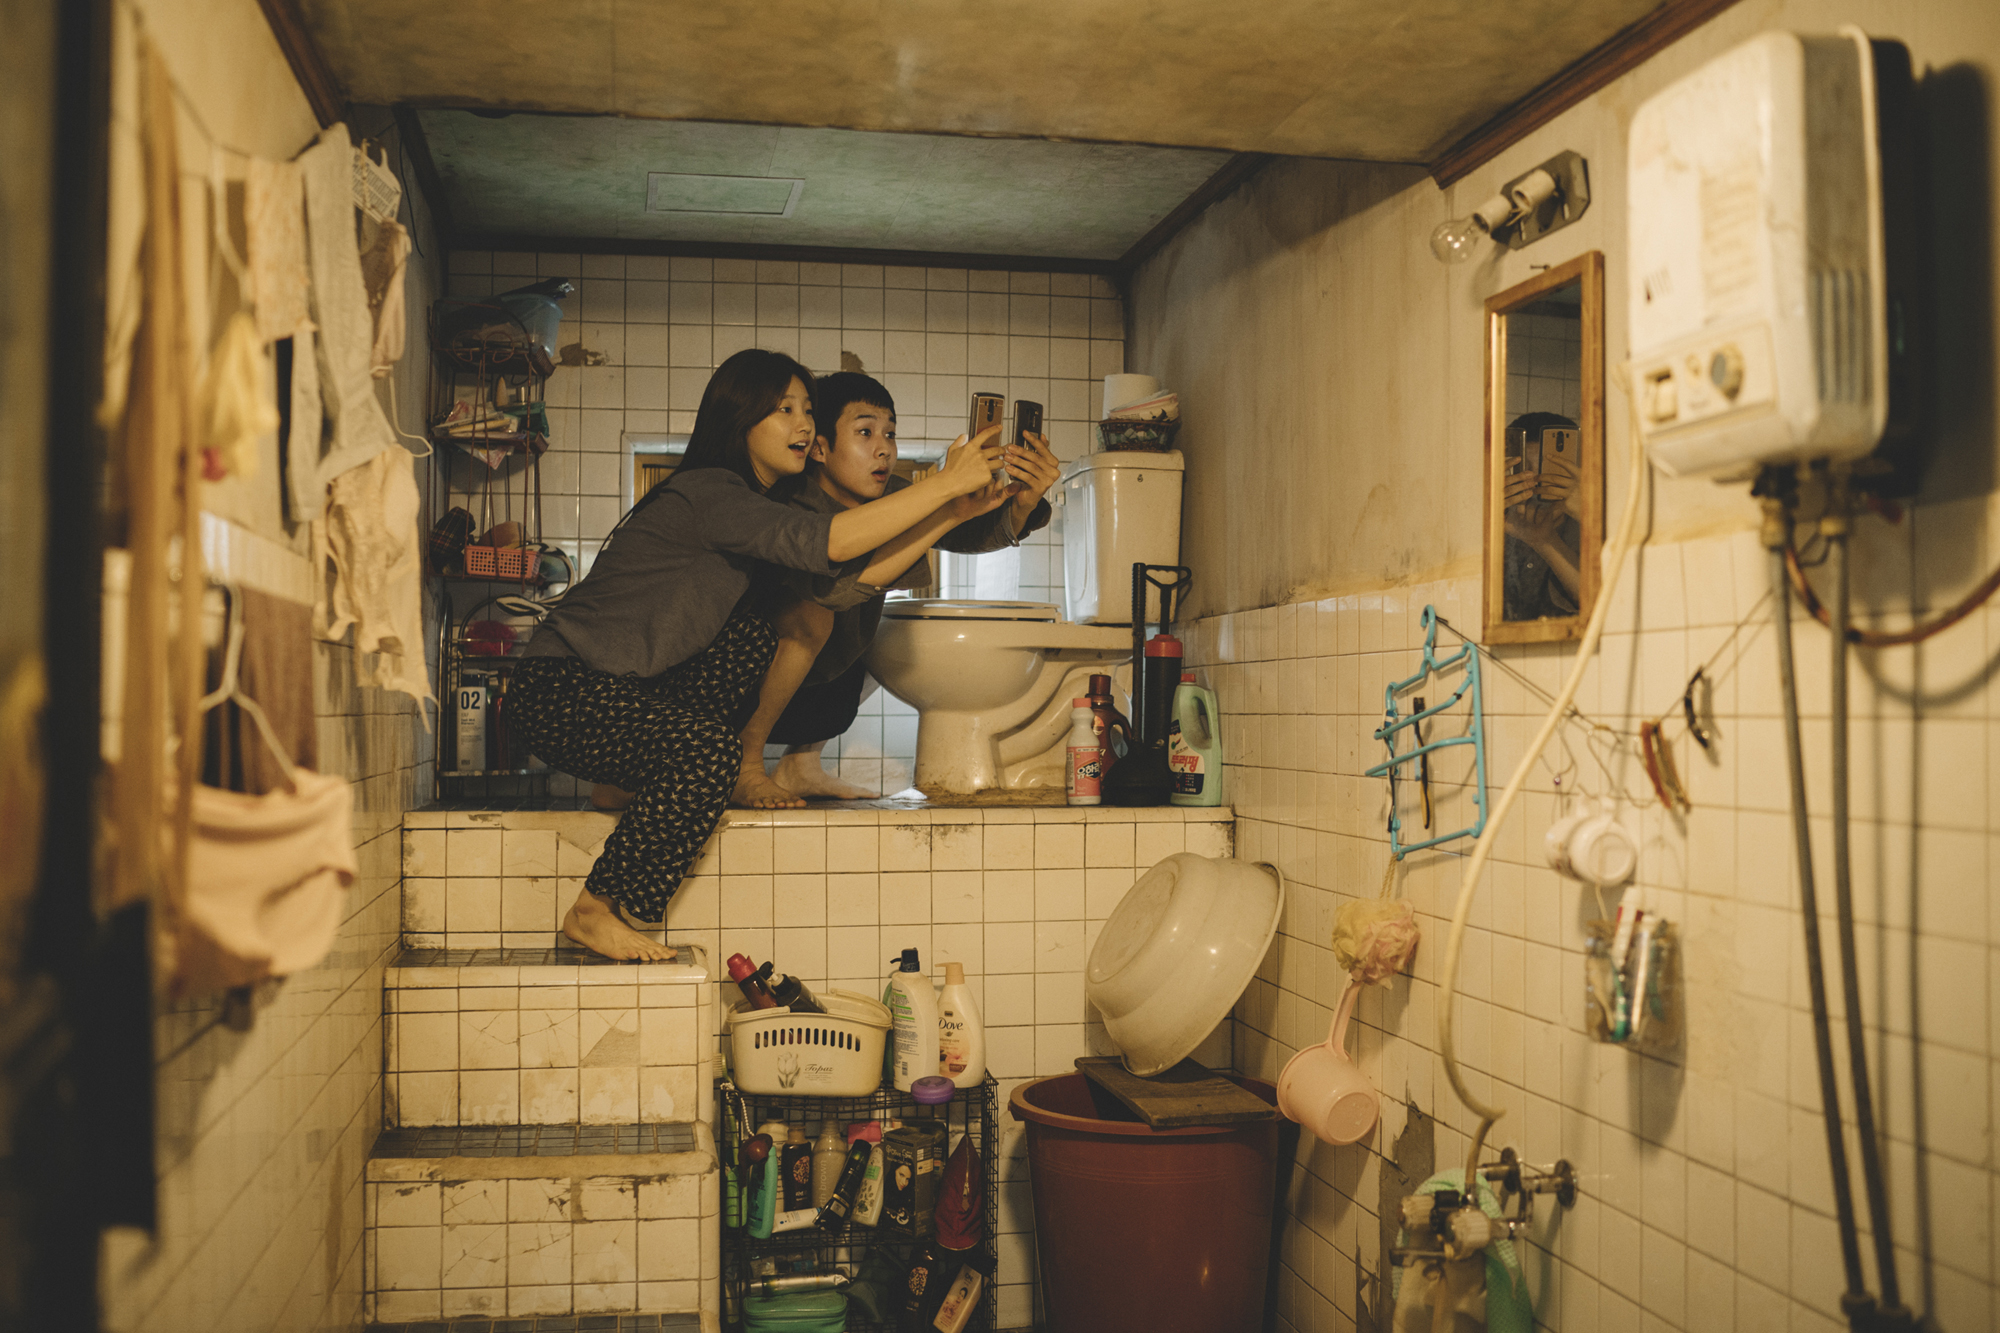 영화 ‘기생충’ 속 기택네 가족이 사는 반지하방의 화장실.